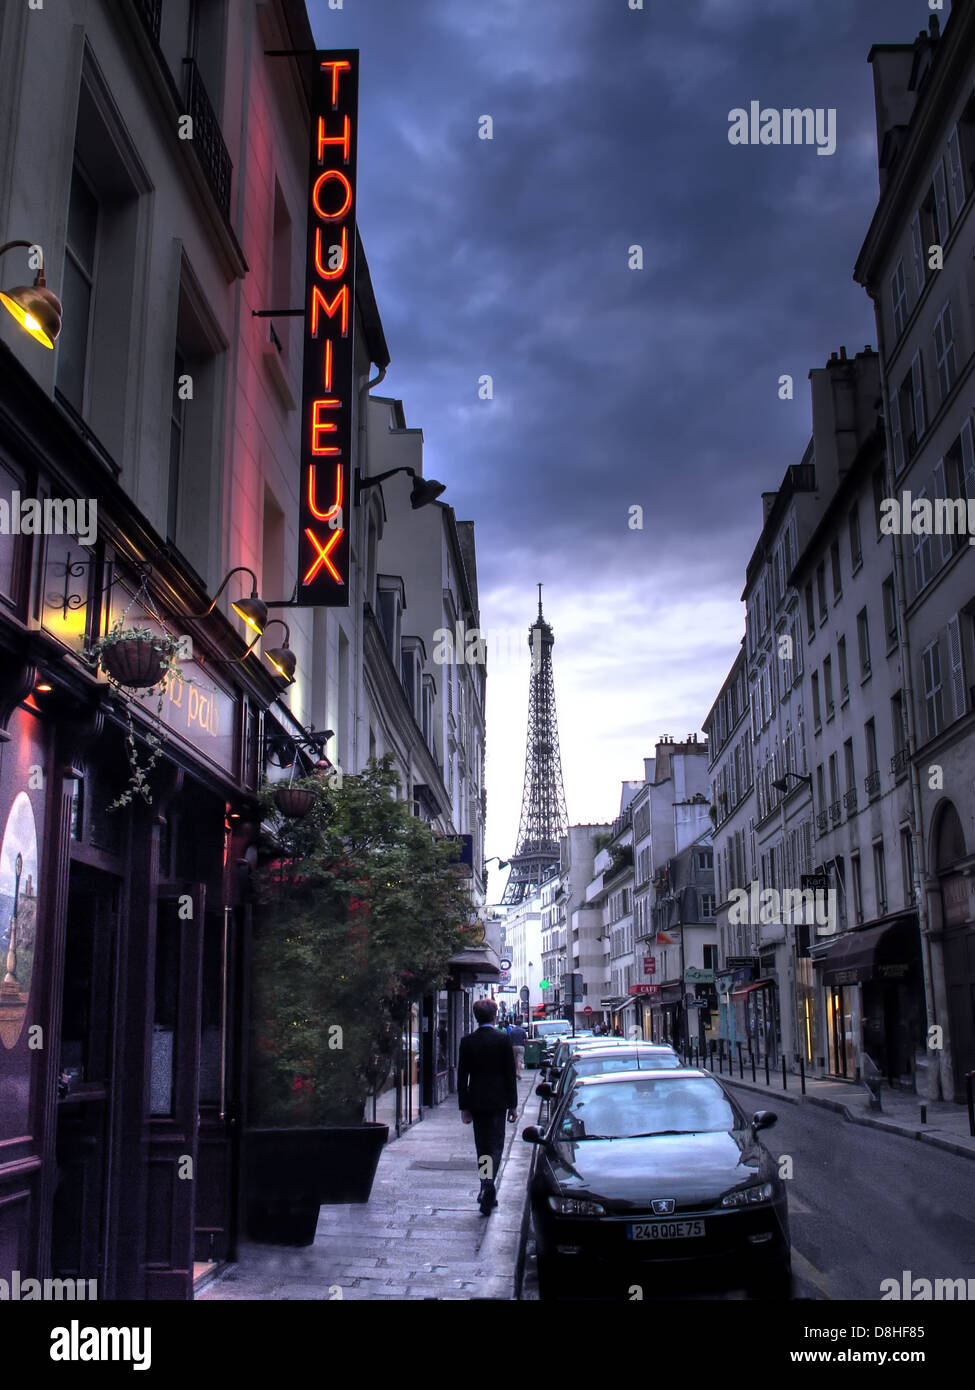 Un seul français, à pied du 79 rue Saint-Dominique 75007 Paris, France, le restaurant Thoumieux, éclairage au néon rouge Banque D'Images